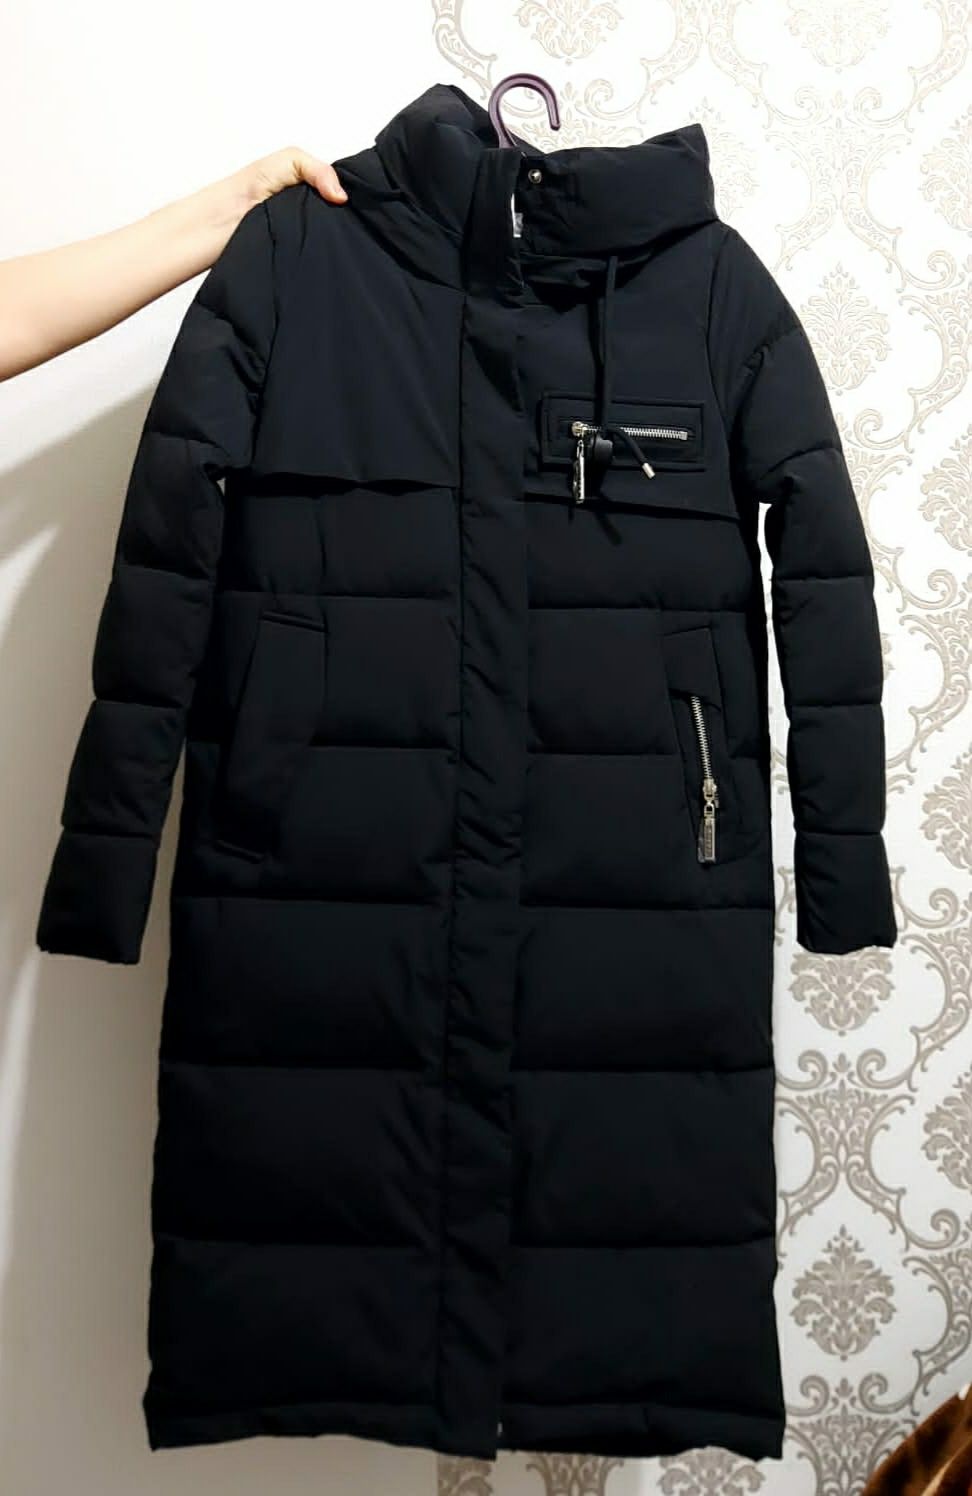 Продам куртку зима для девочек размер 42 покупали за 60 продам за 40ты